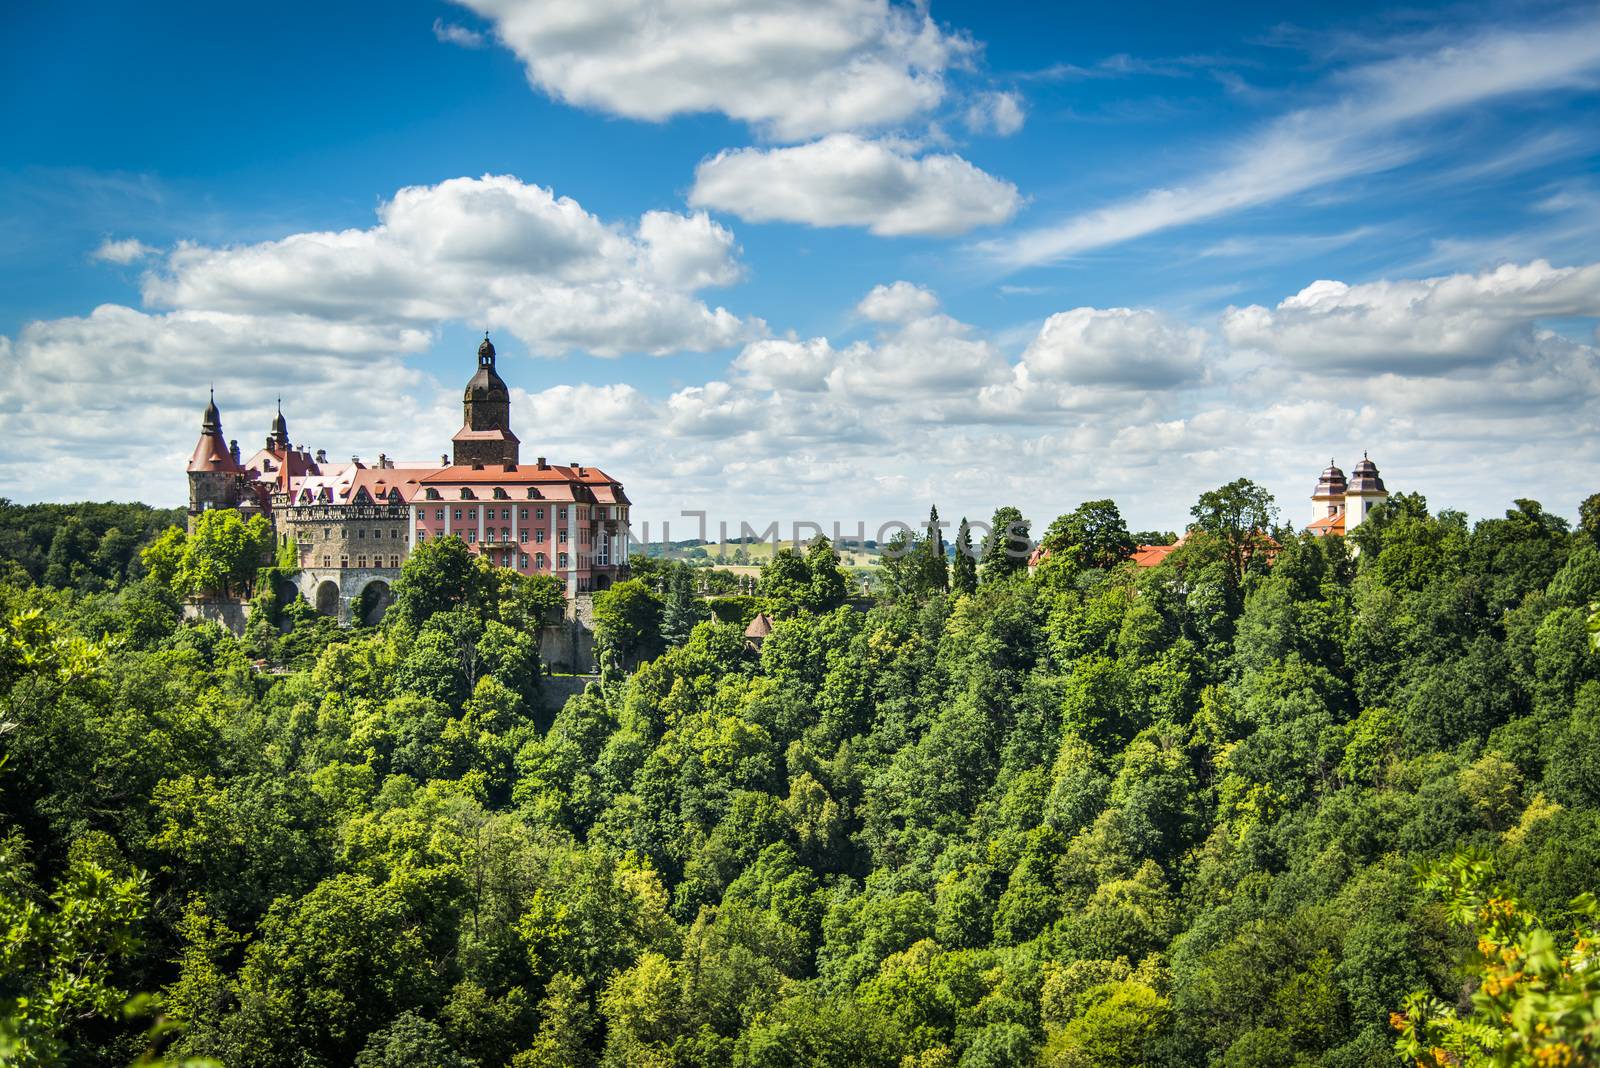 Beauty of Ksiaz Castle by furzyk73